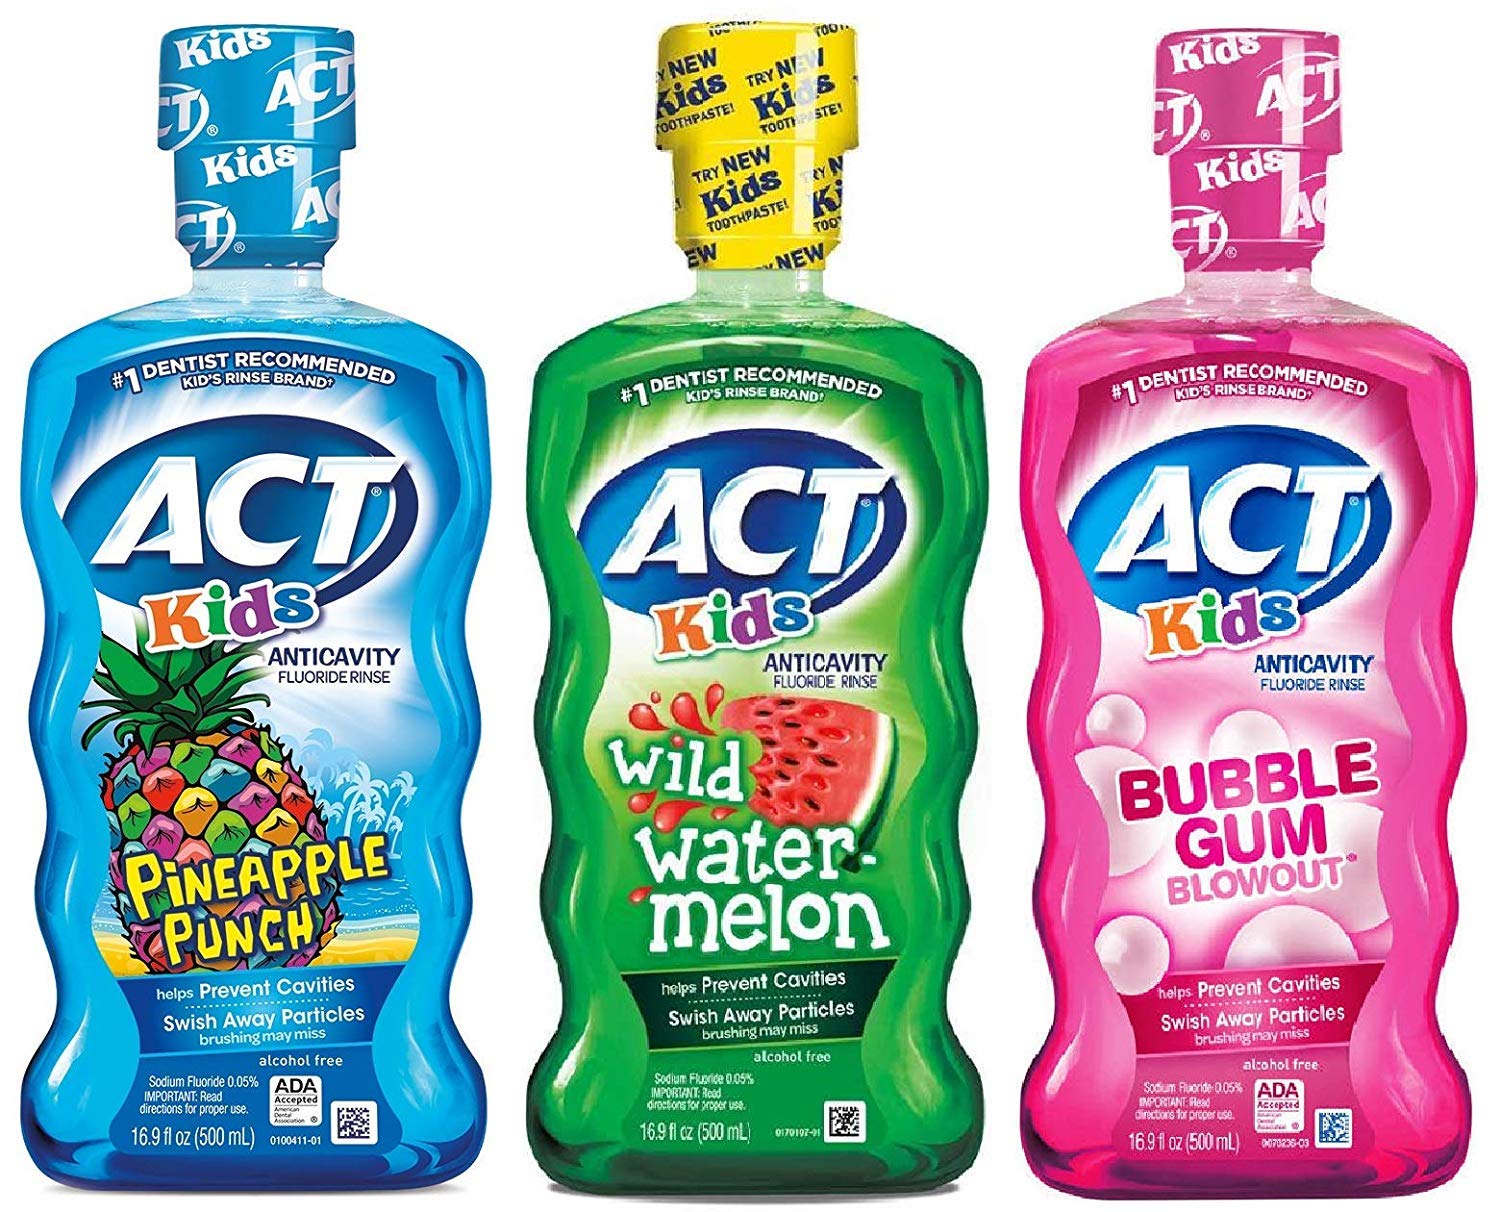 ACT Kids Mouthwash Variety Pack (Original Version)